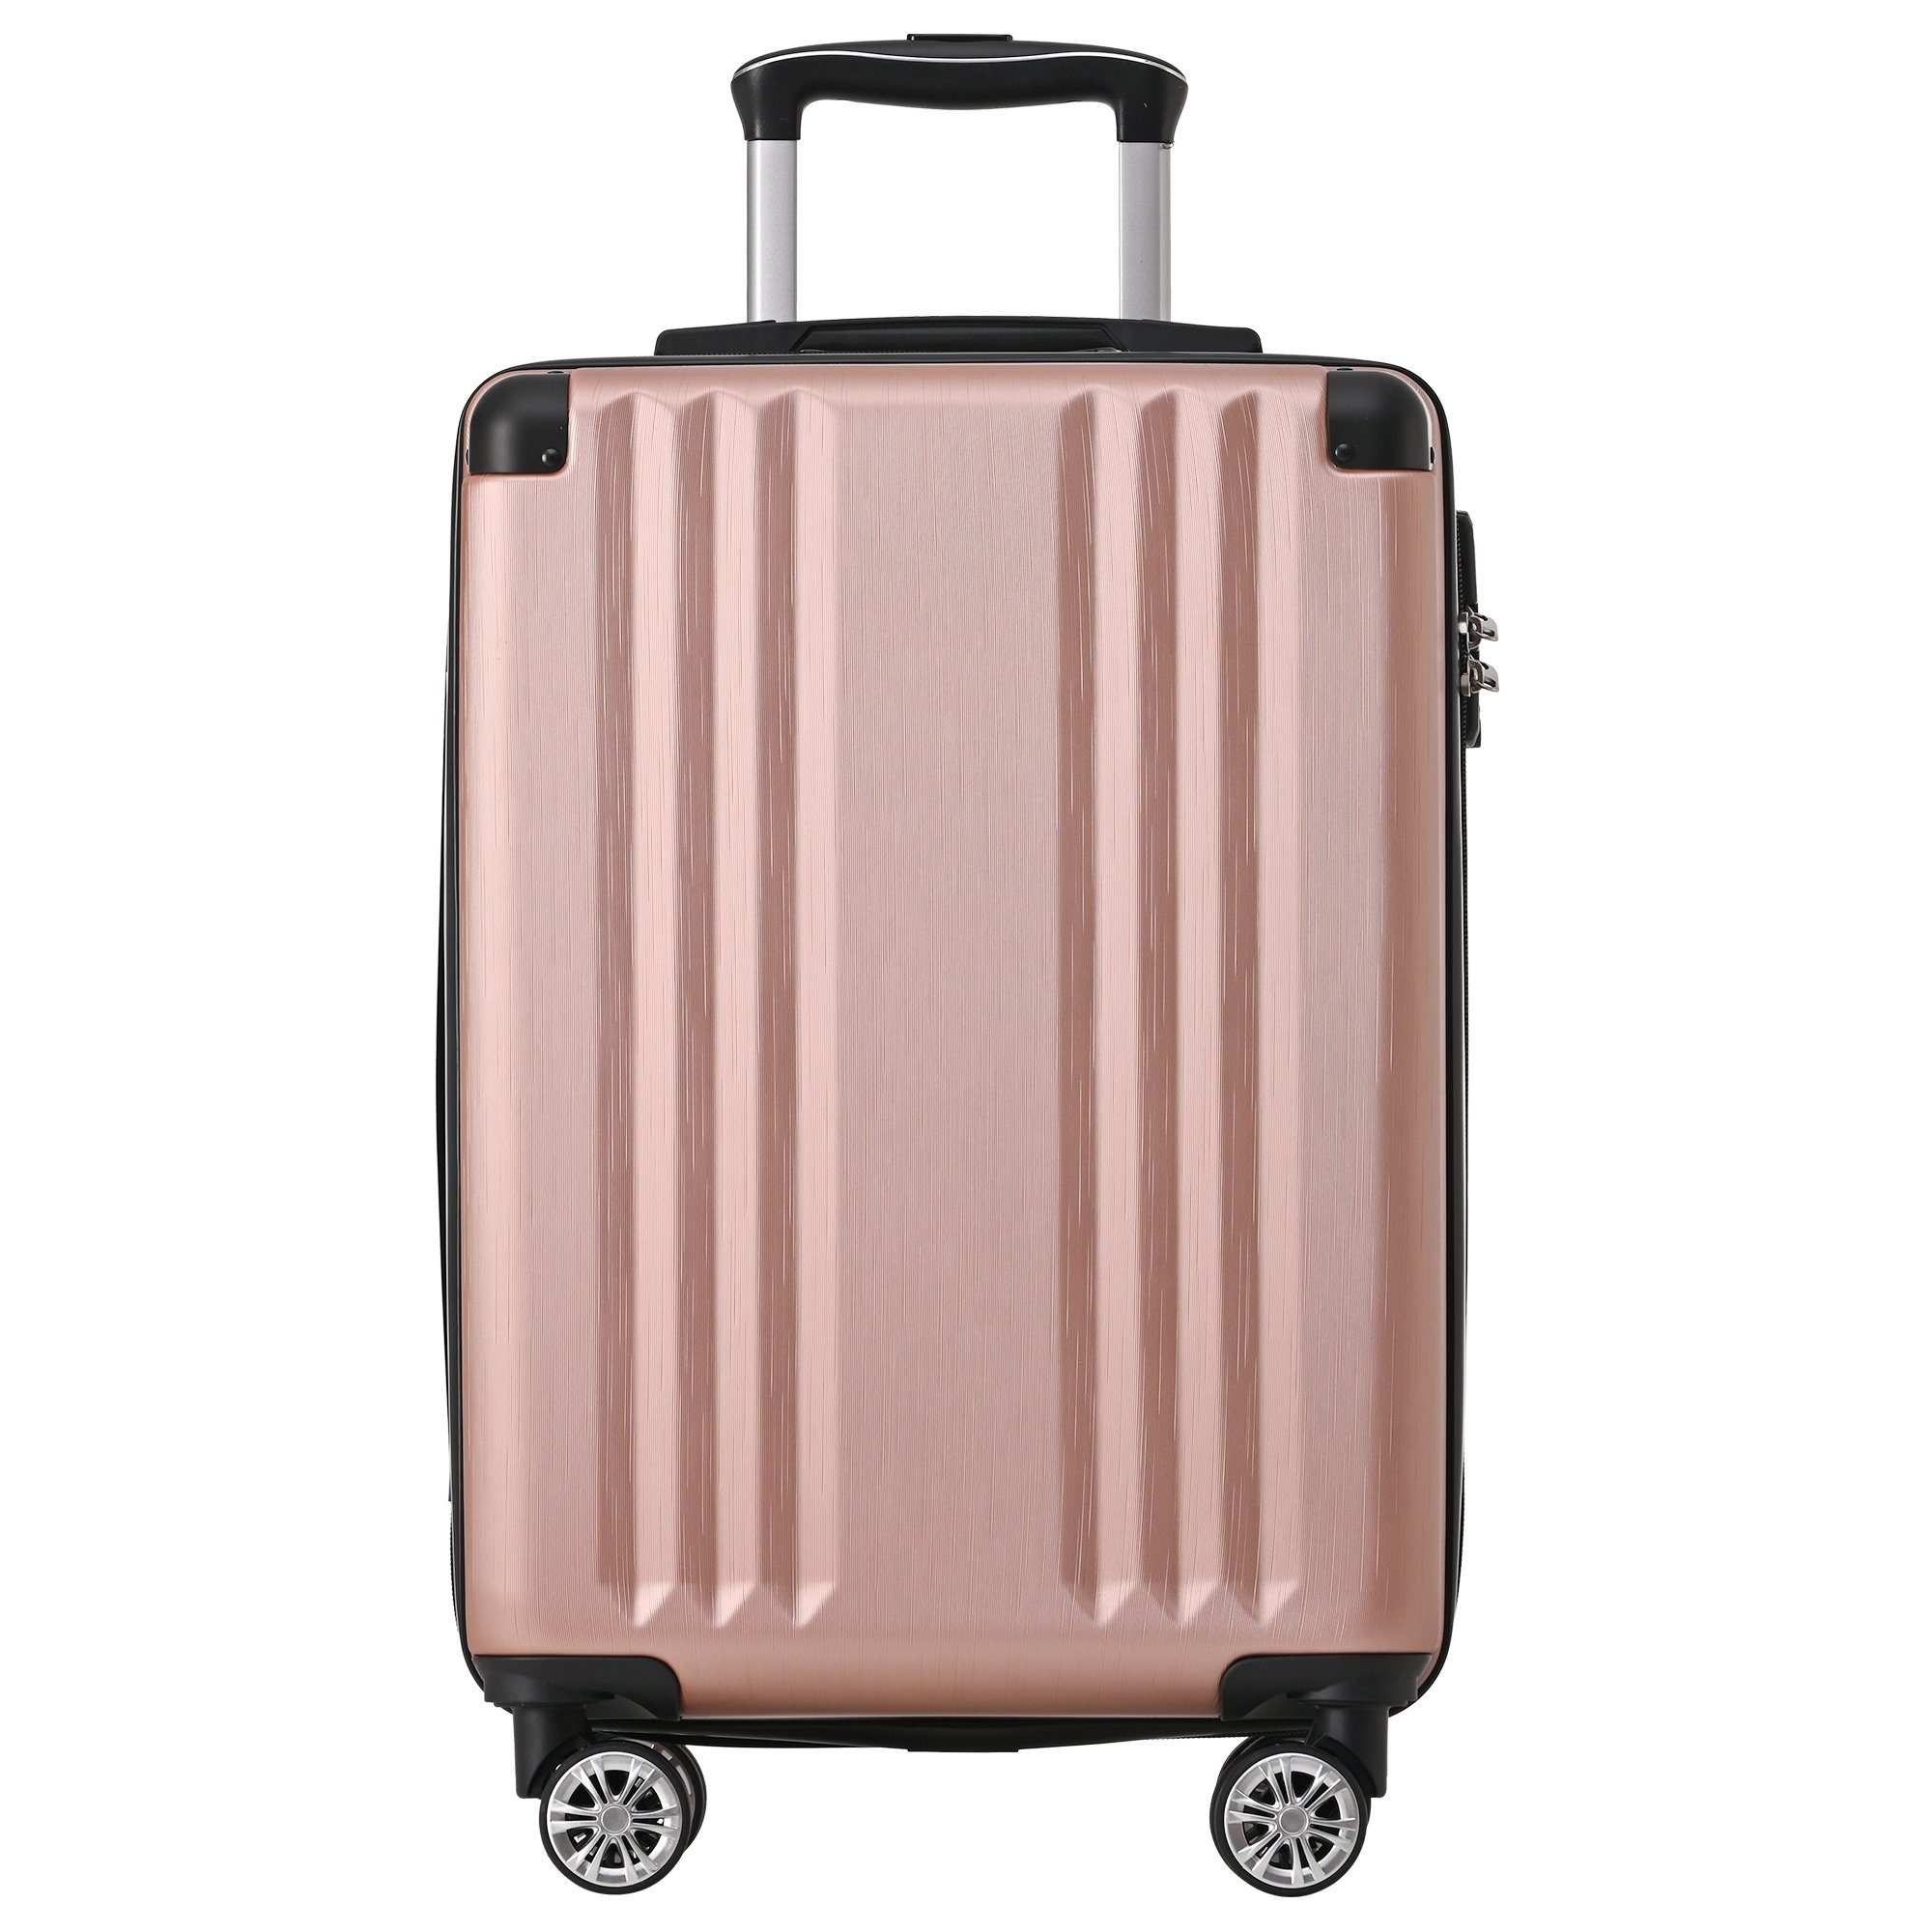 Handgepäck-Trolley Ulife 4 M-Größe:56.5*37.5*22.5 Pink Zollschloss, ABS-Material, Rollen, TSA Reisekoffer